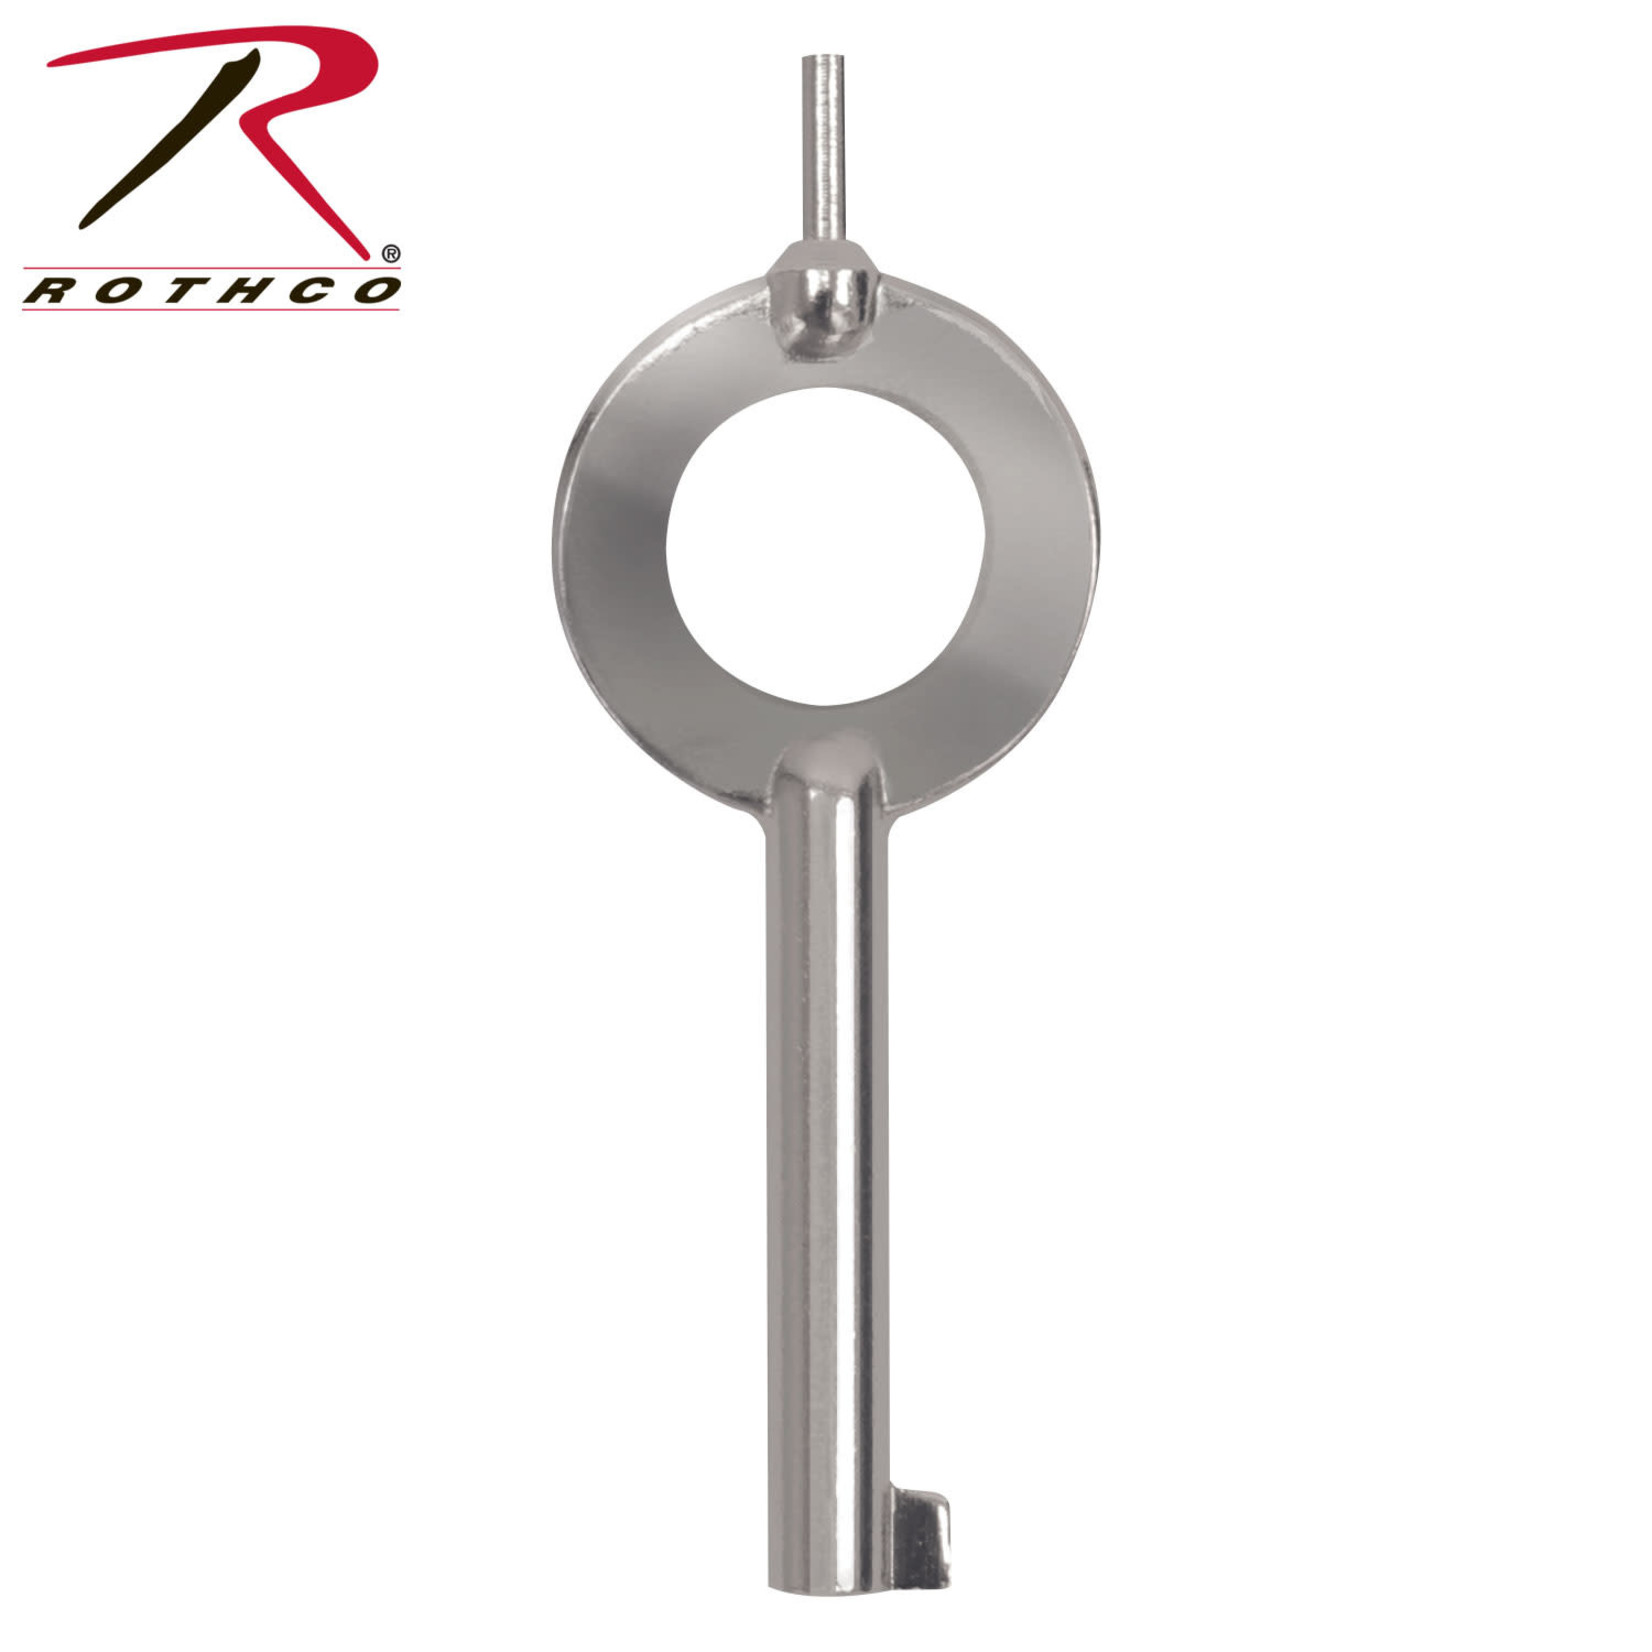 Rothco Rothco Standard Handcuff Key